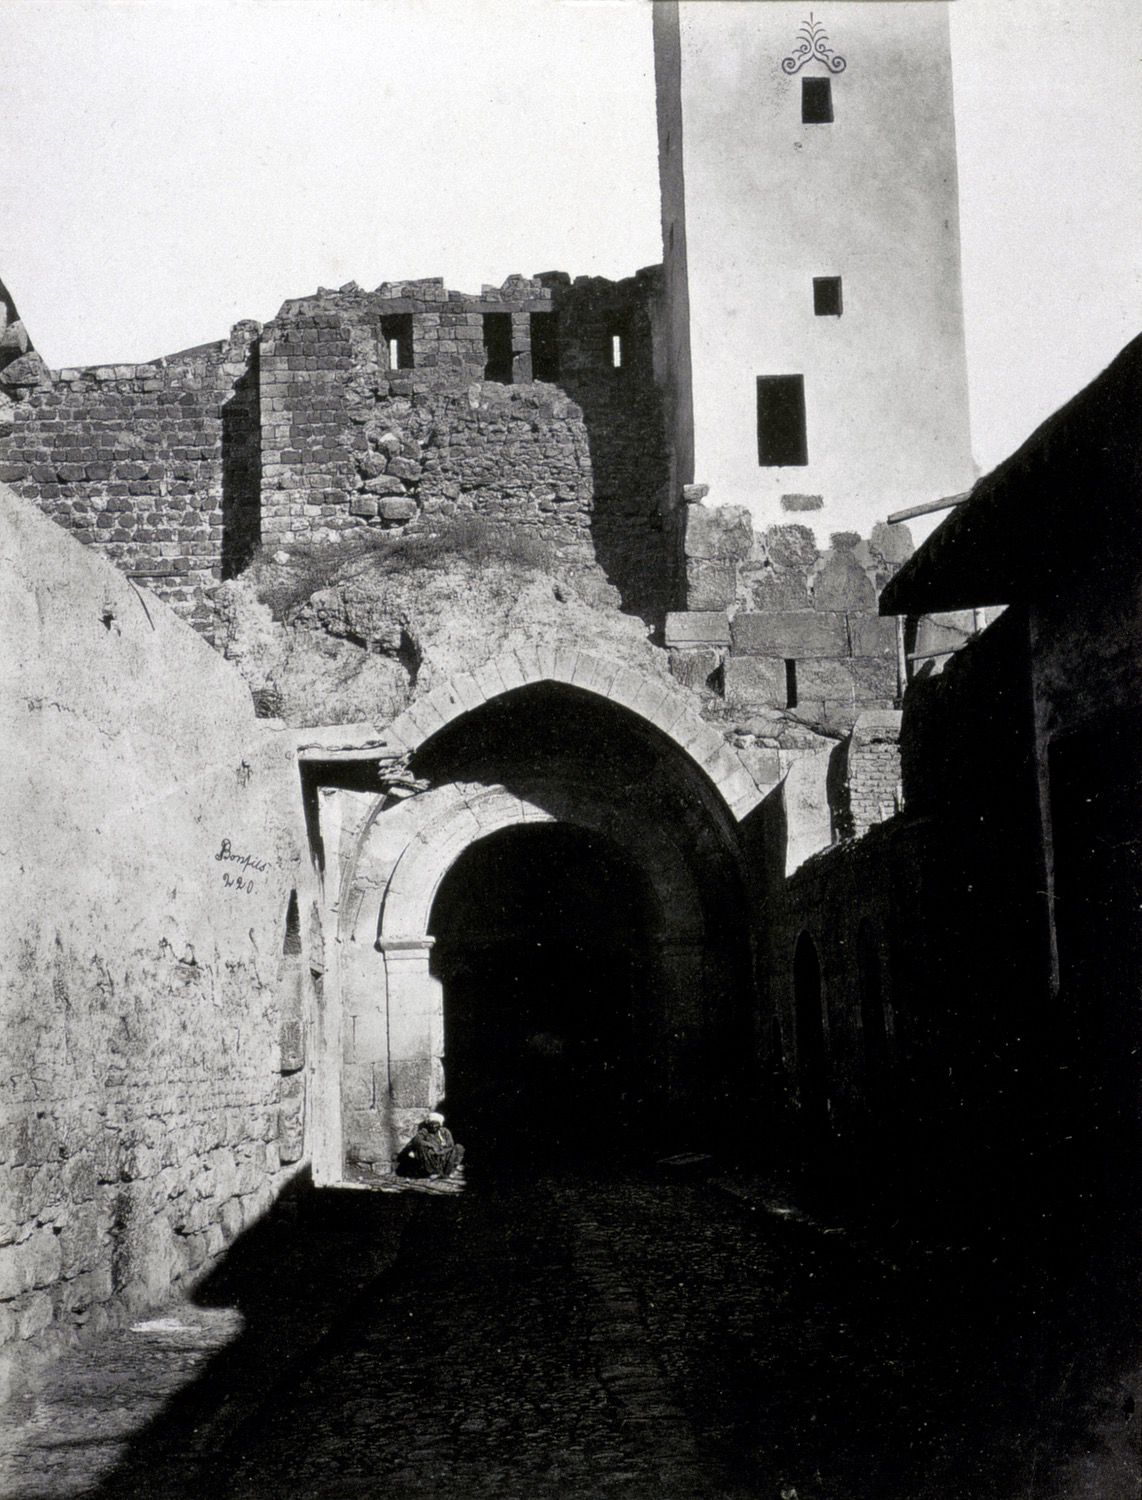 Historical views. "Bab Sharqi, interior view of the walls"